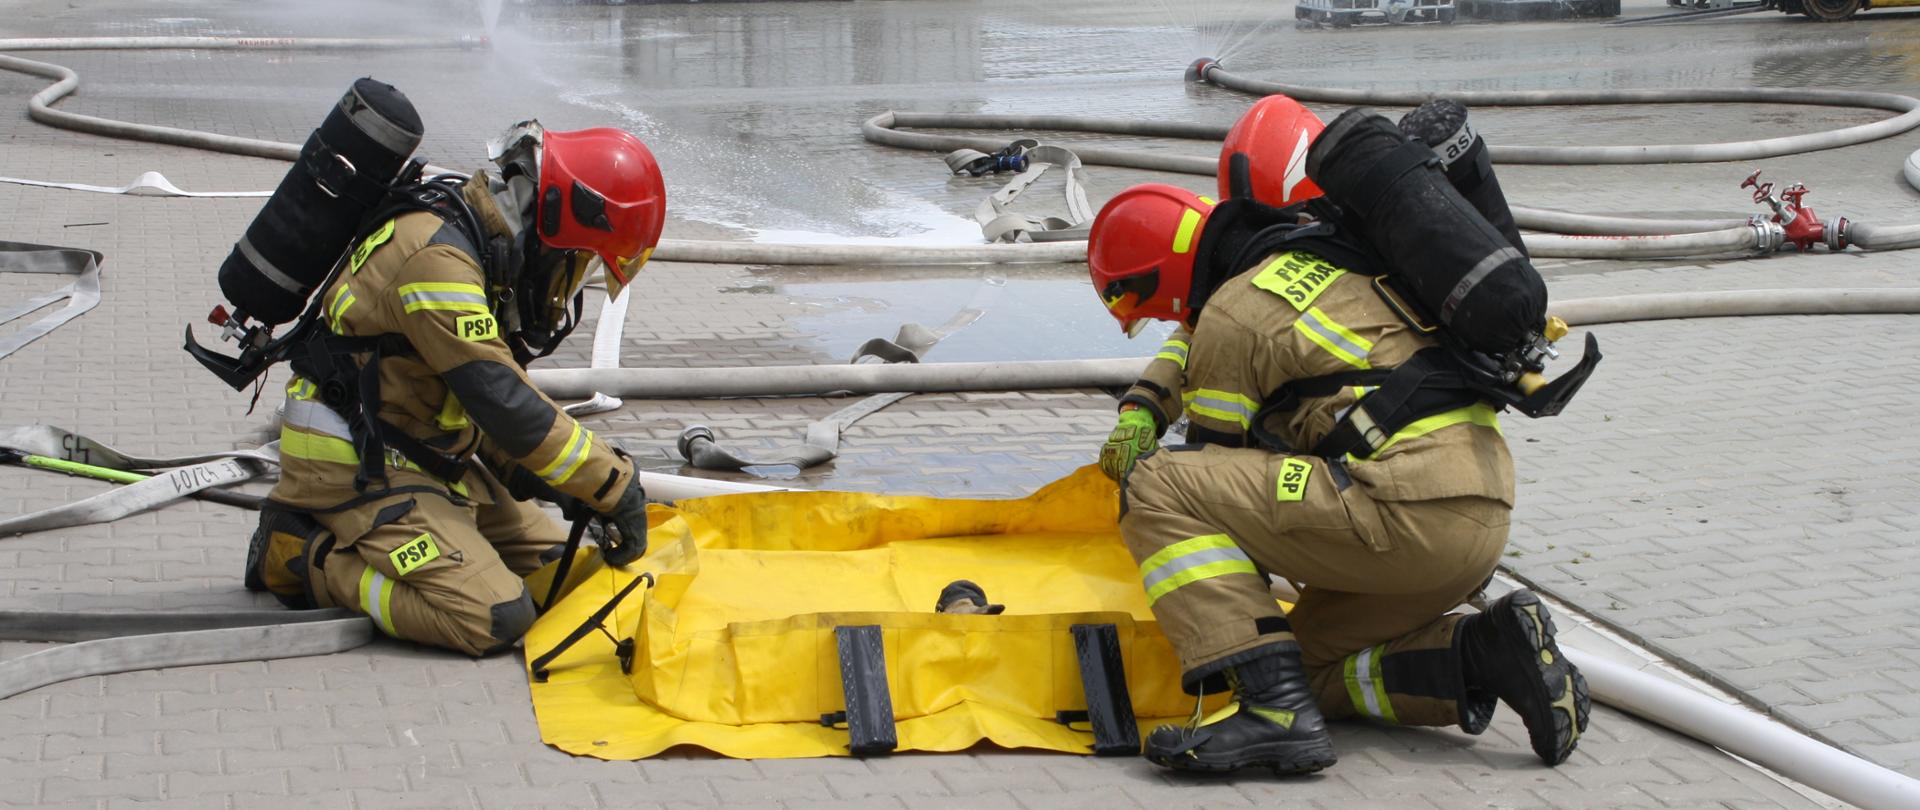 Strażacy PSP w pełnym ubraniu bojowym składają leżącą na placu firmy żółtą wannę wychwytową . W tle kurtyny wodne, wózek widłowy oraz mauzery.